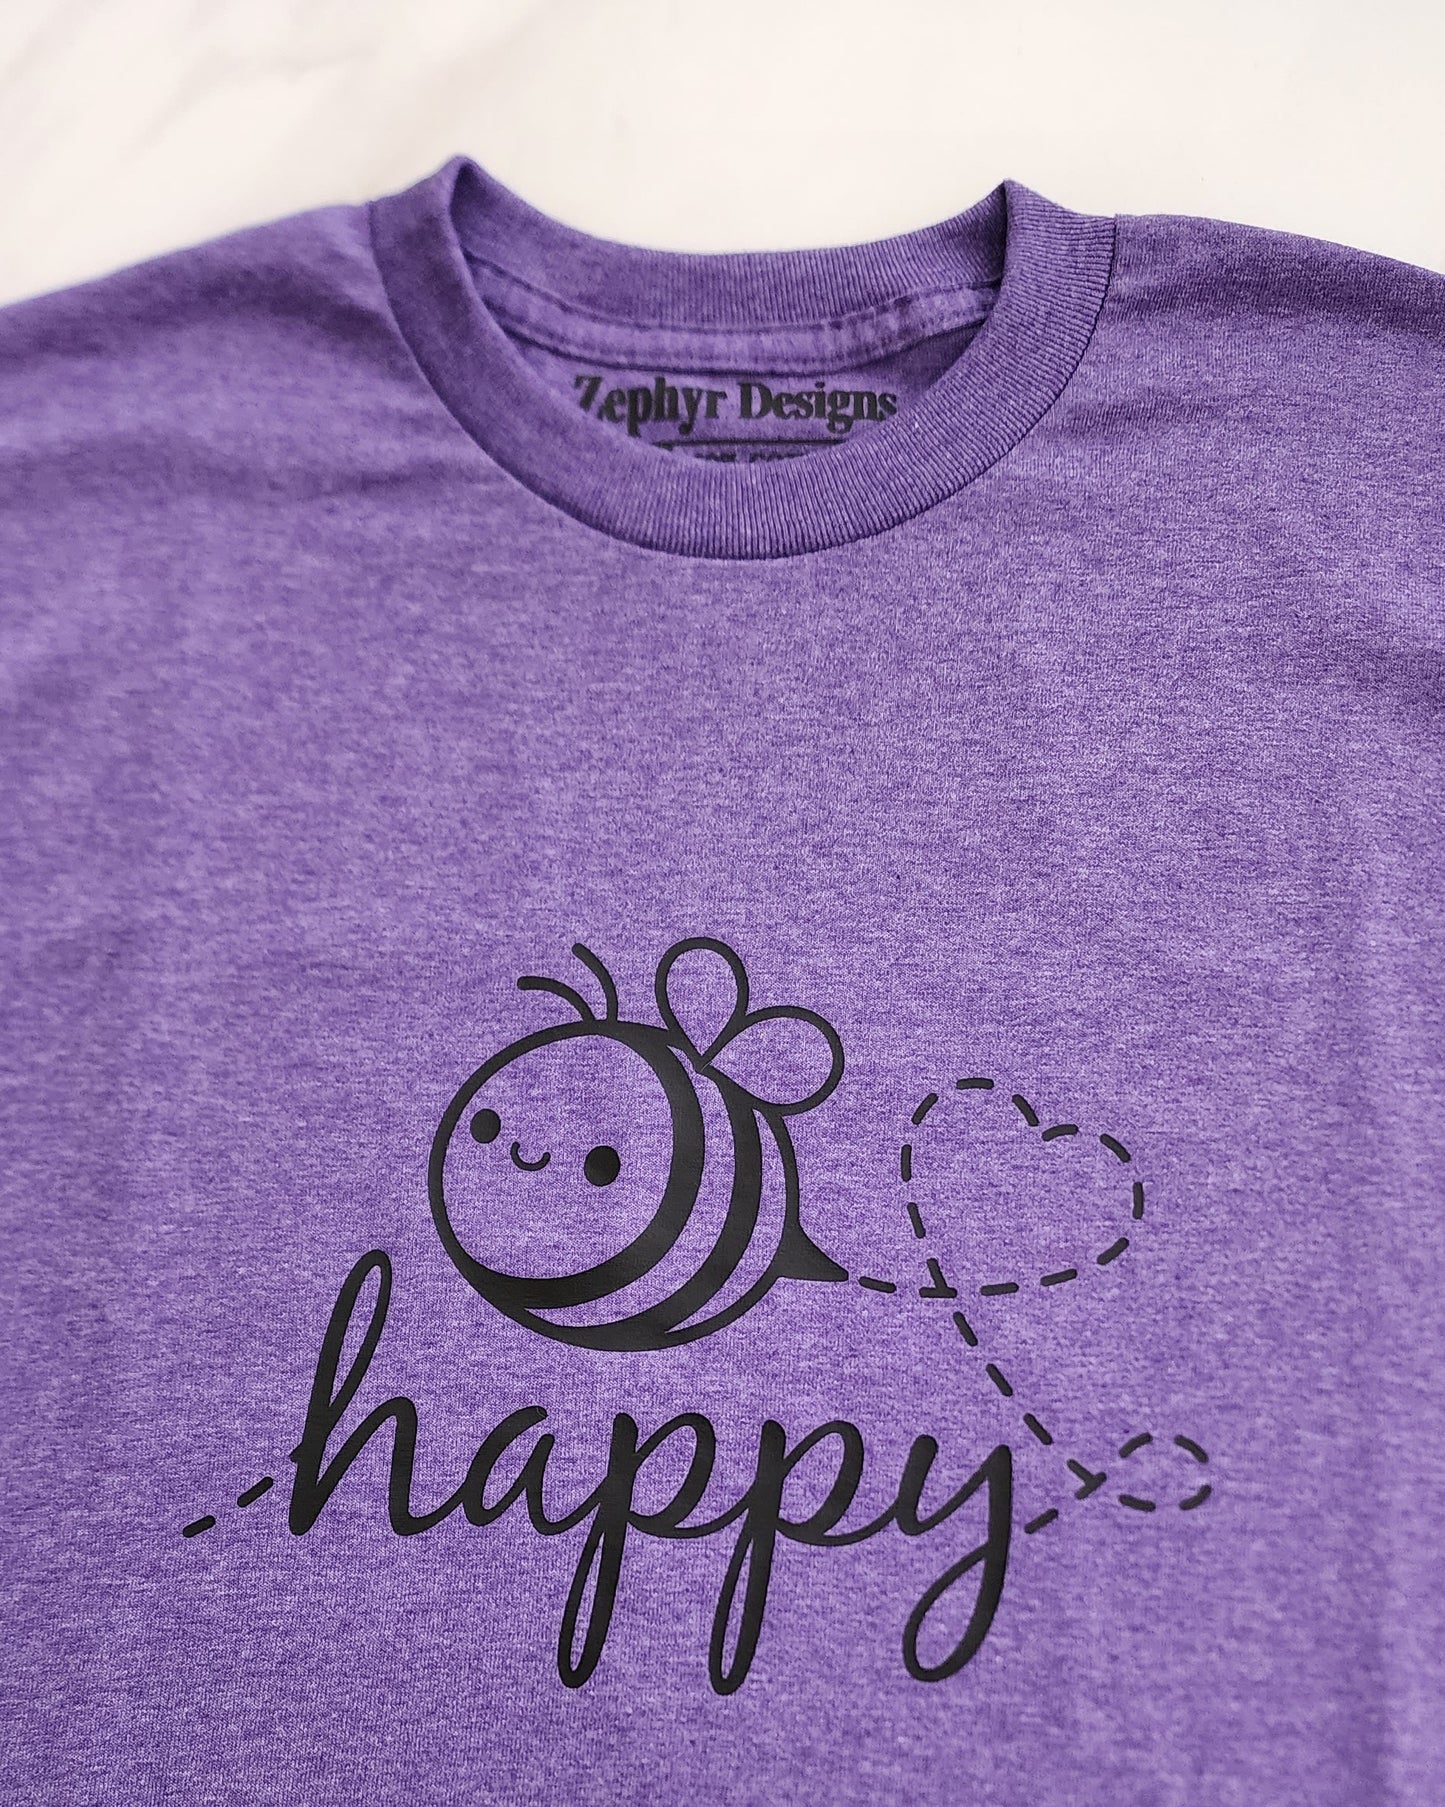 Bee Happy Shirt